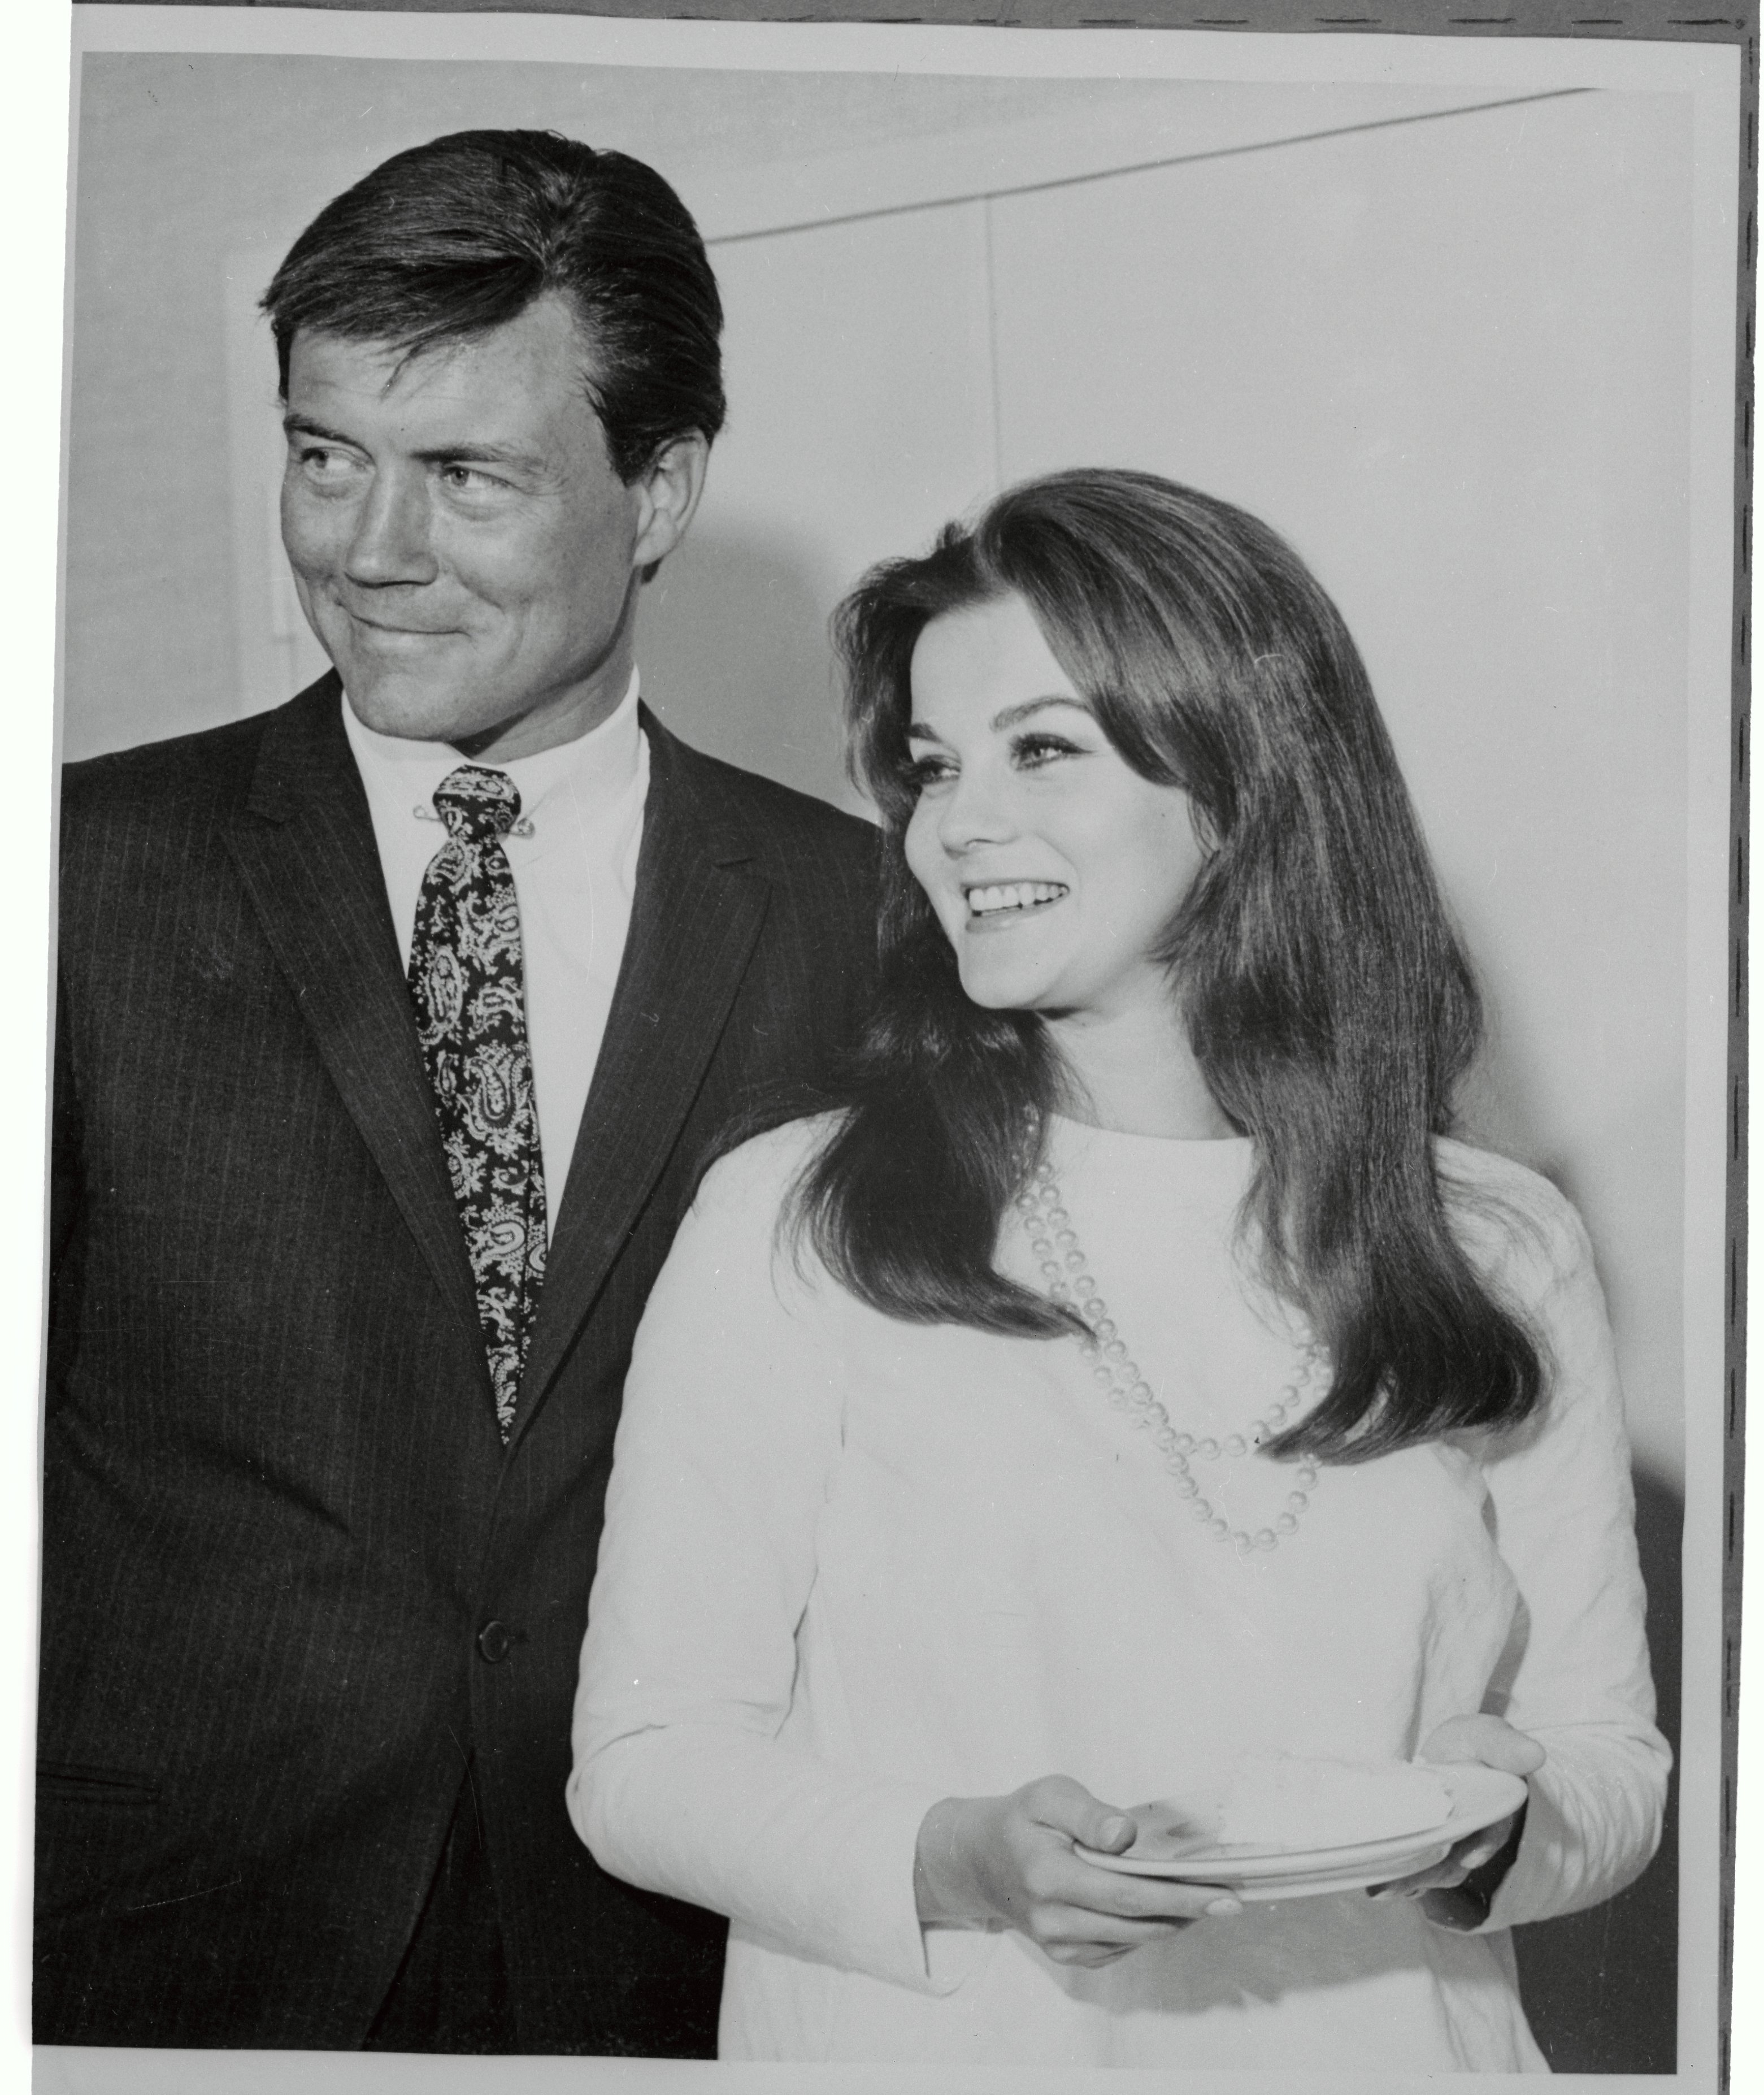 Ann-Margret tenant un morceau de gâteau de mariage aux côtés de son nouveau mari Roger Smith, après s'être mariée lors d'une cérémonie civile le 8 mai 1967. | Source : Getty Images